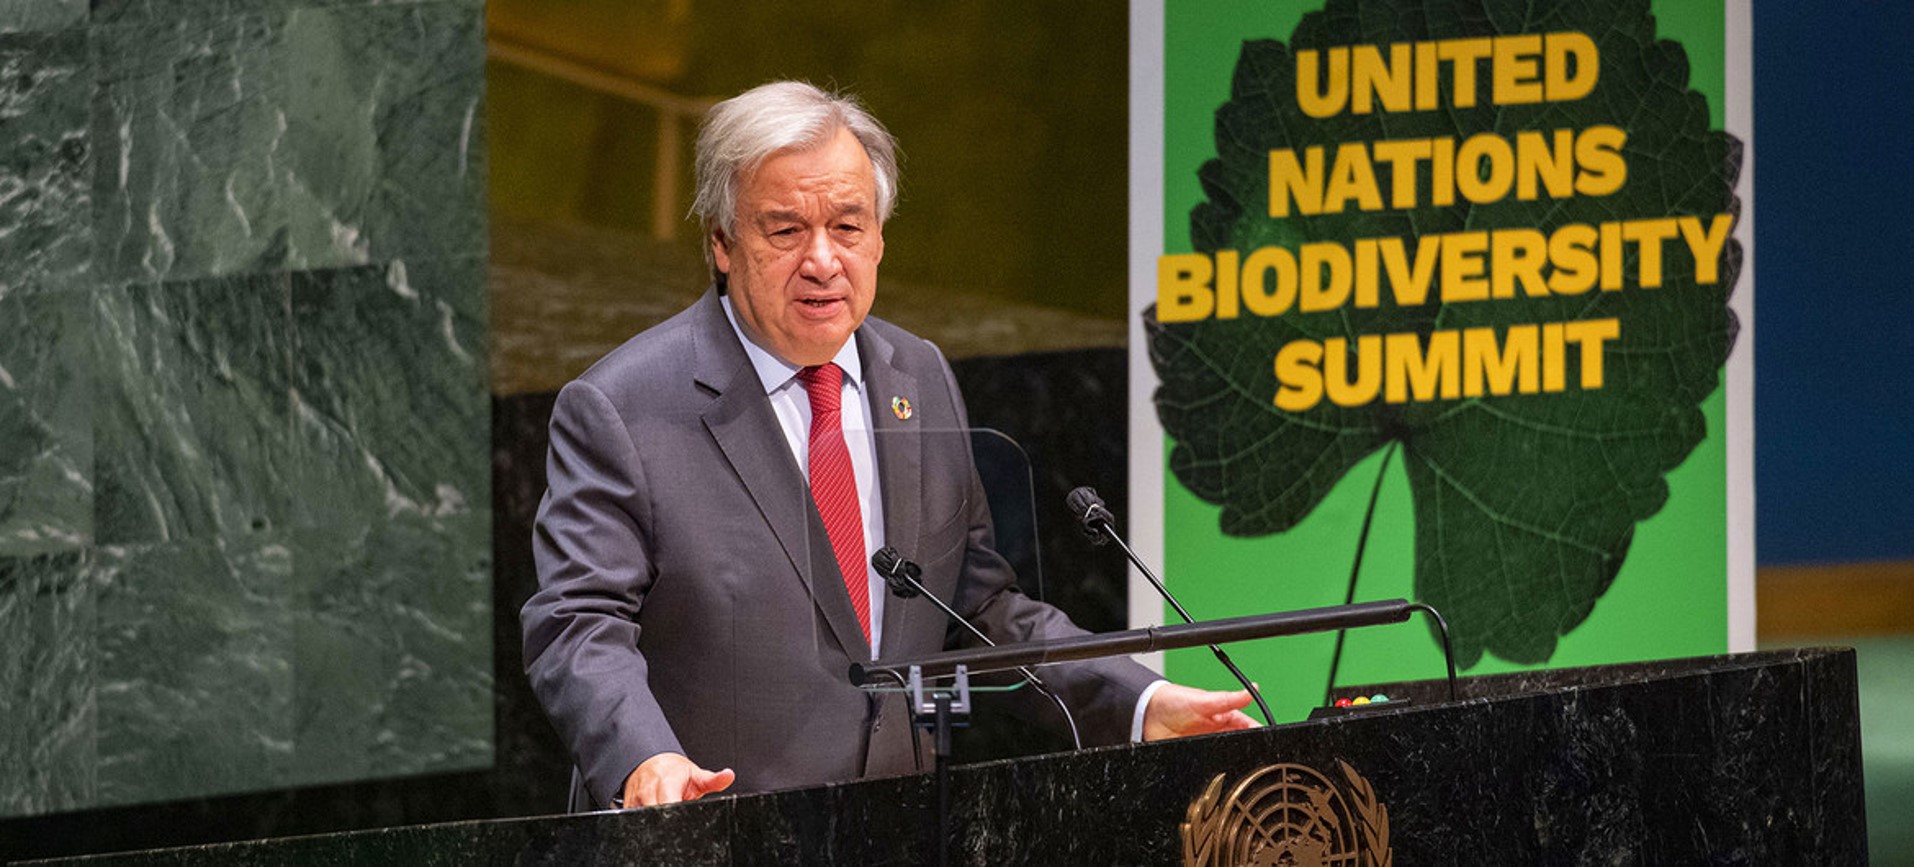 Un acuerdo mundial para proteger la biodiversidad y evitar otra pandemia, el llamado de los líderes mundiales